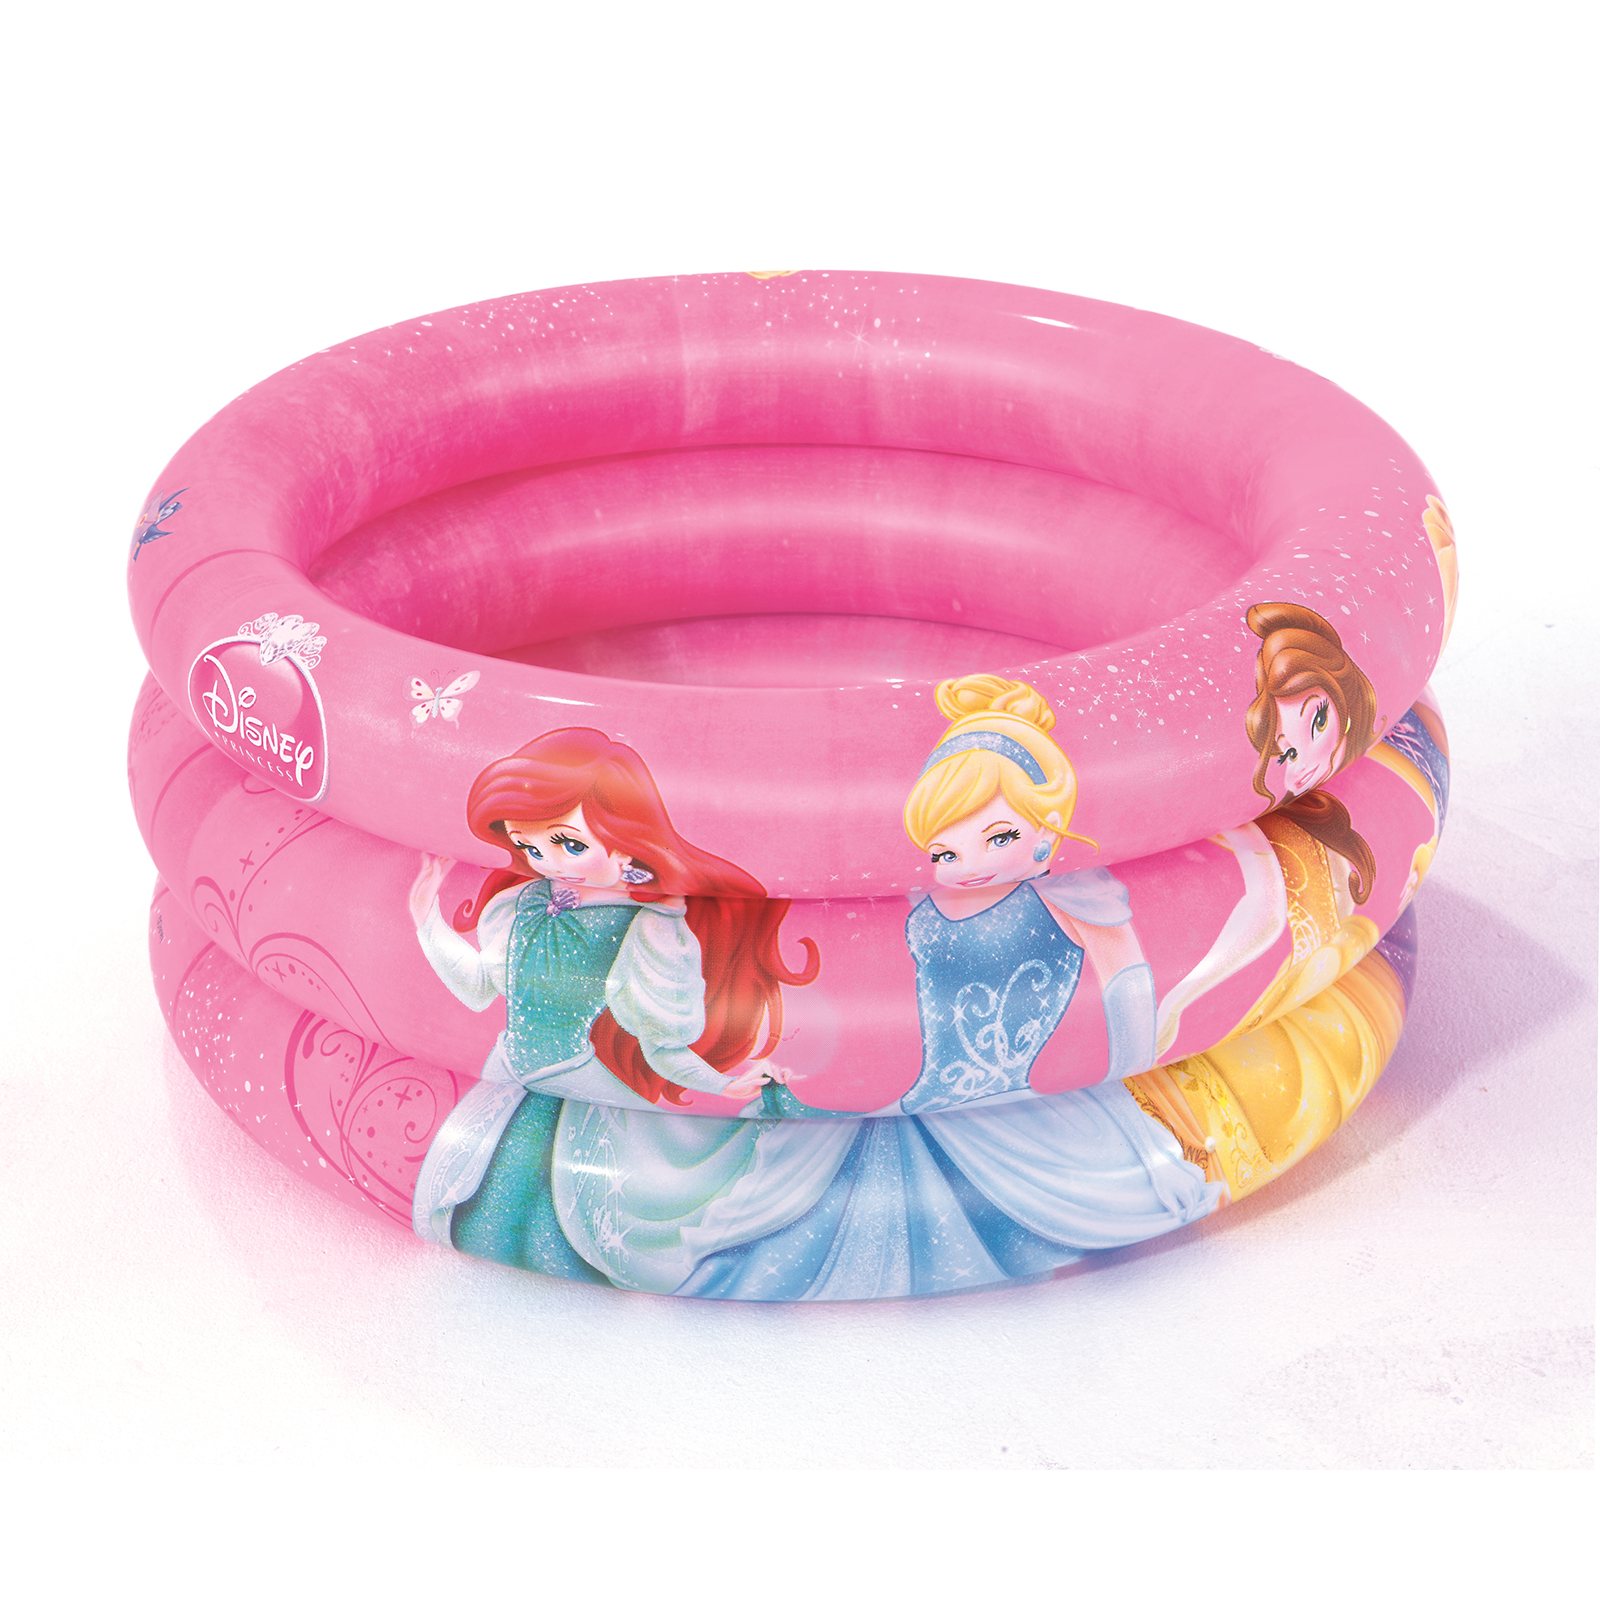 Piscina Hinchable Autoportante Infantil Bestway 70x30 Cm Diseño Princesas Disney - rosa - 